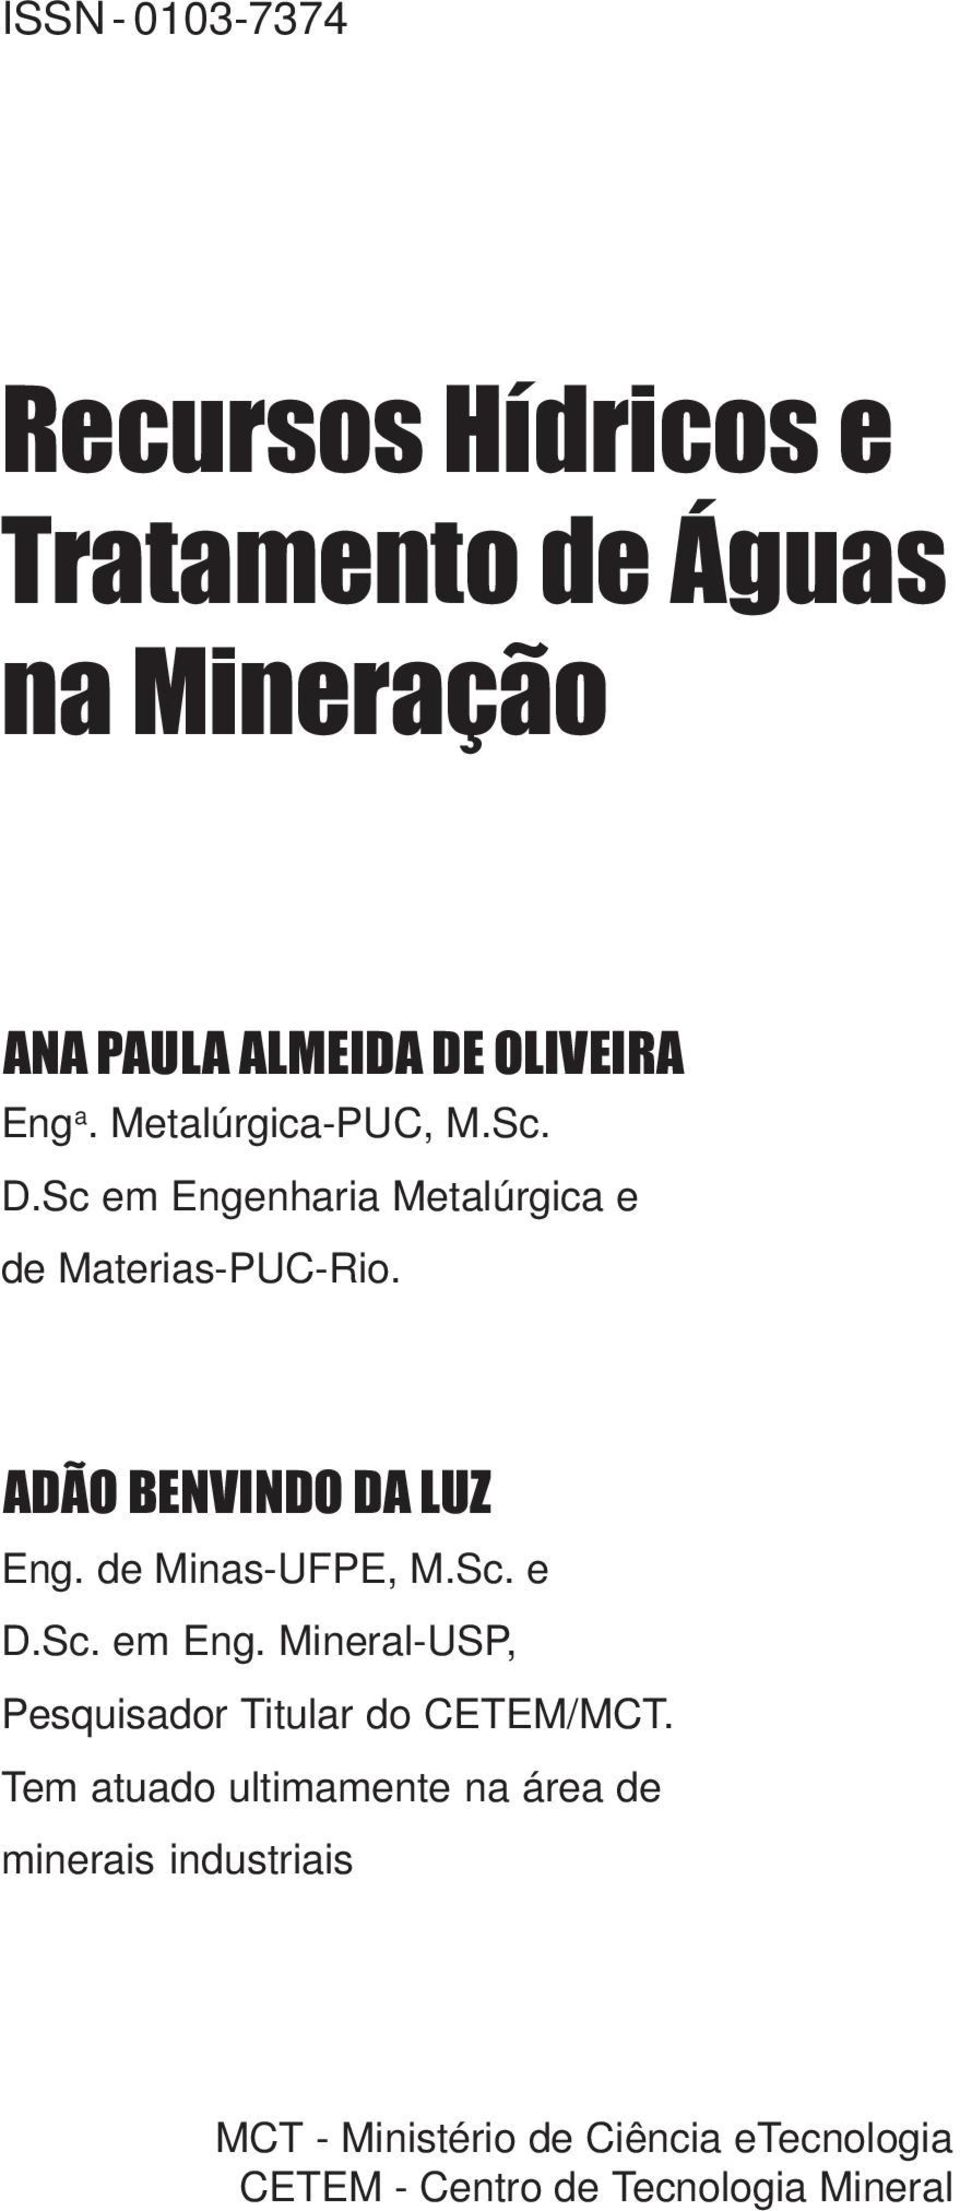 de Minas-UFPE, M.Sc. e D.Sc. em Eng. Mineral-USP, Pesquisador Titular do CETEM/MCT.